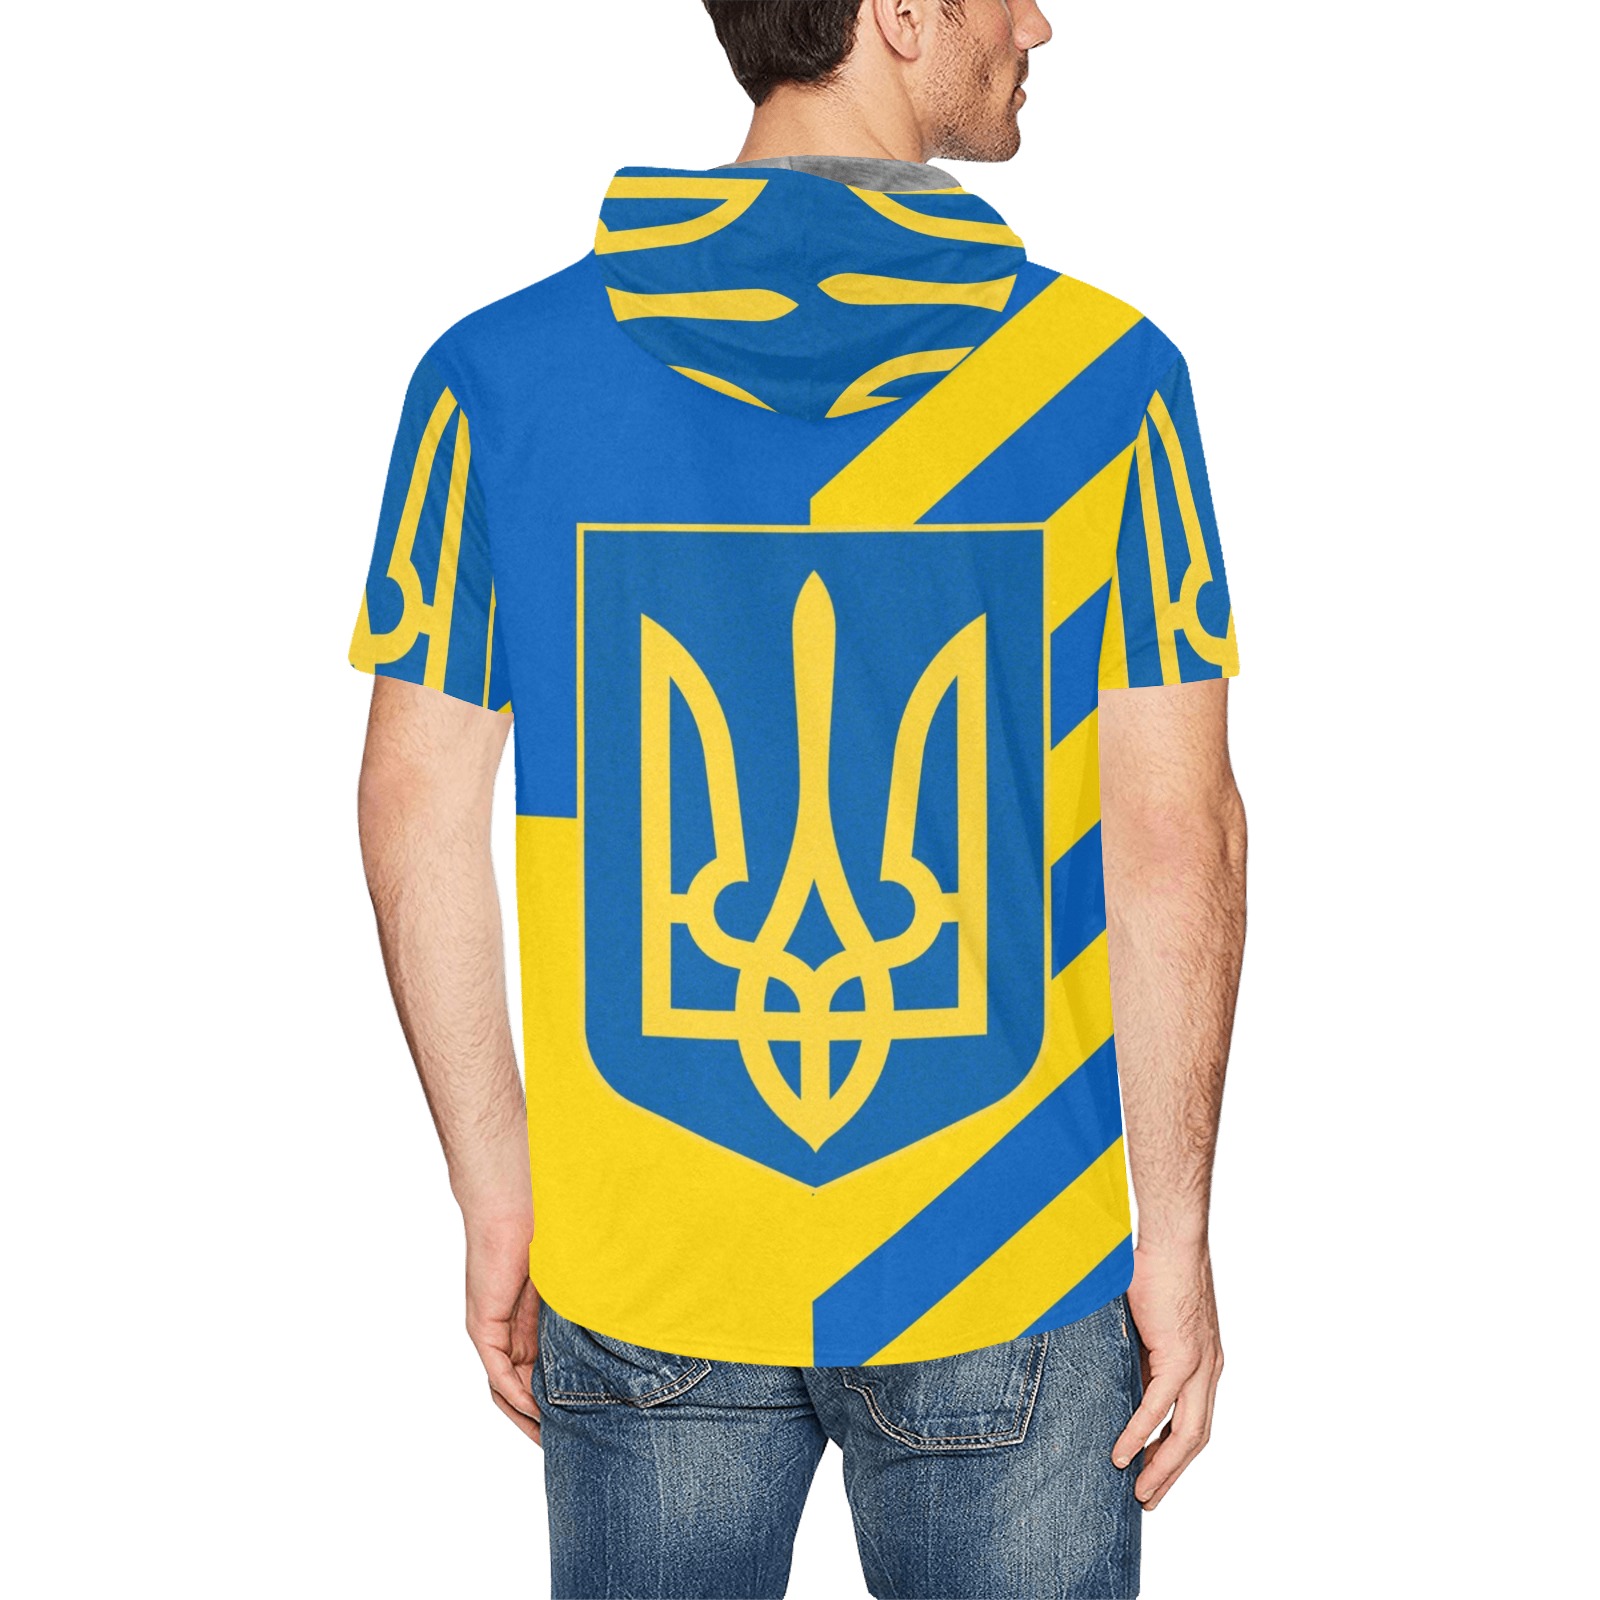 UKRAINE All Over Print Short Sleeve Hoodie for Men (Model H32)